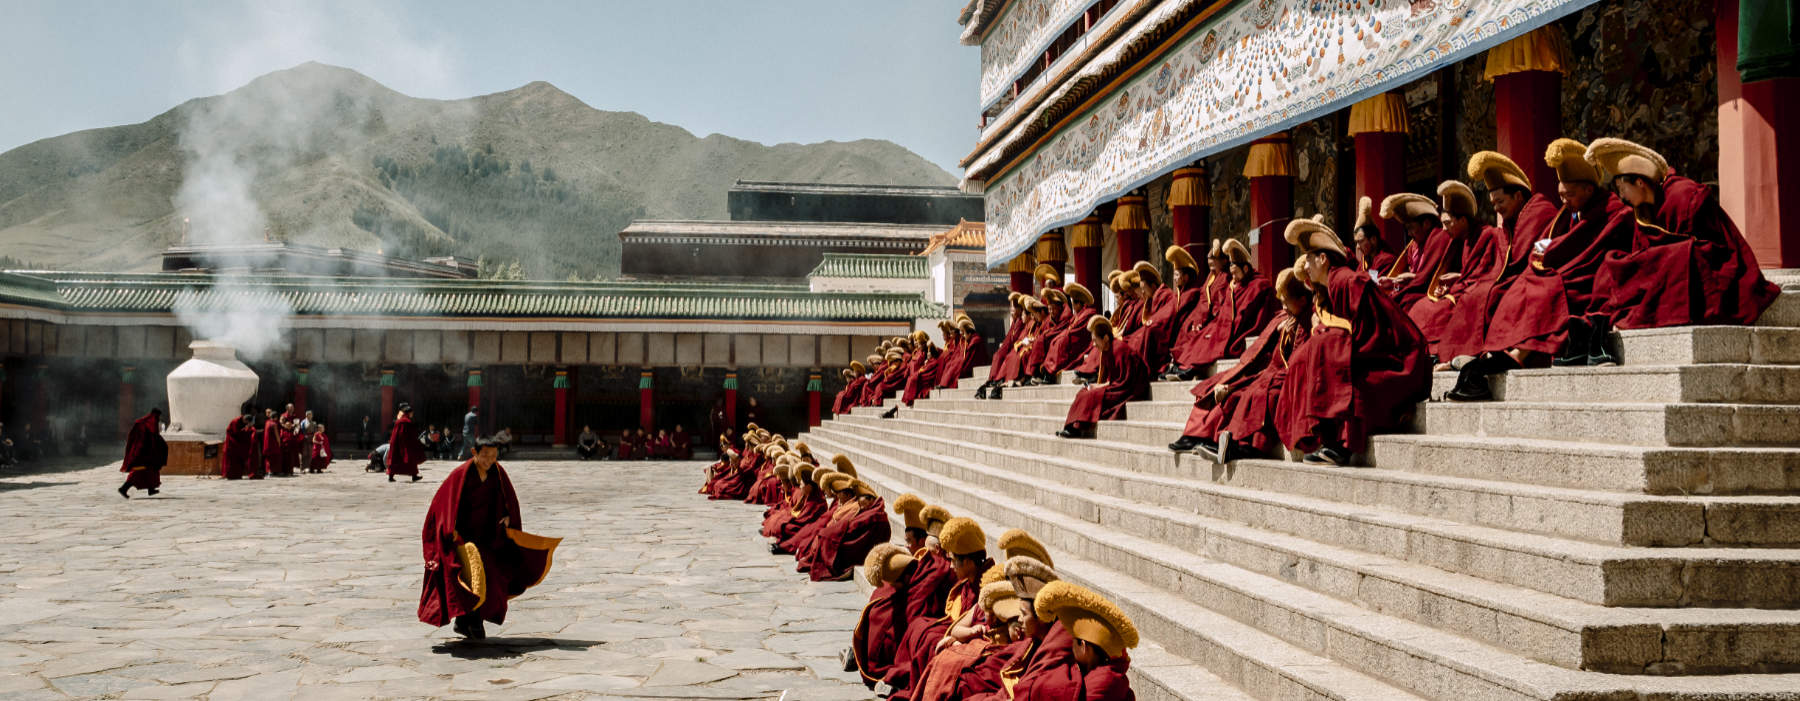 Tibet<br class="hidden-md hidden-lg" /> Cultural Holidays